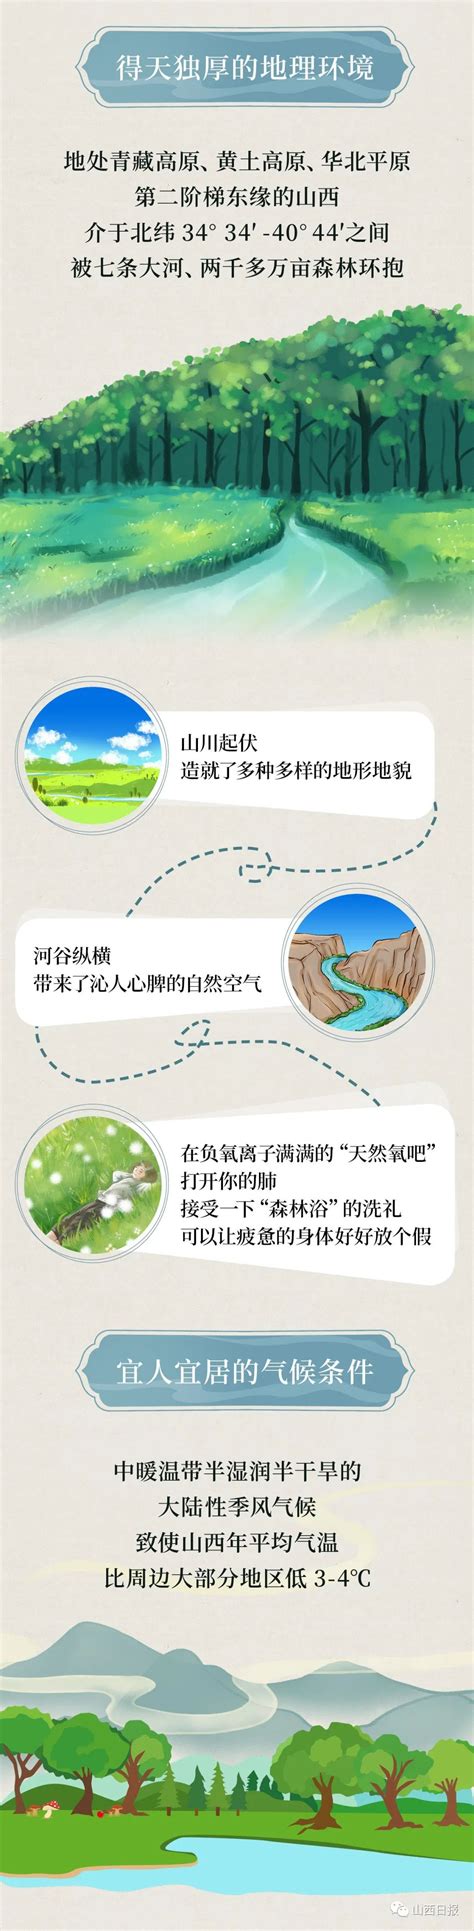 长图丨和山西相遇在25℃的夏天-忻州在线 忻州新闻 忻州日报网 忻州新闻网